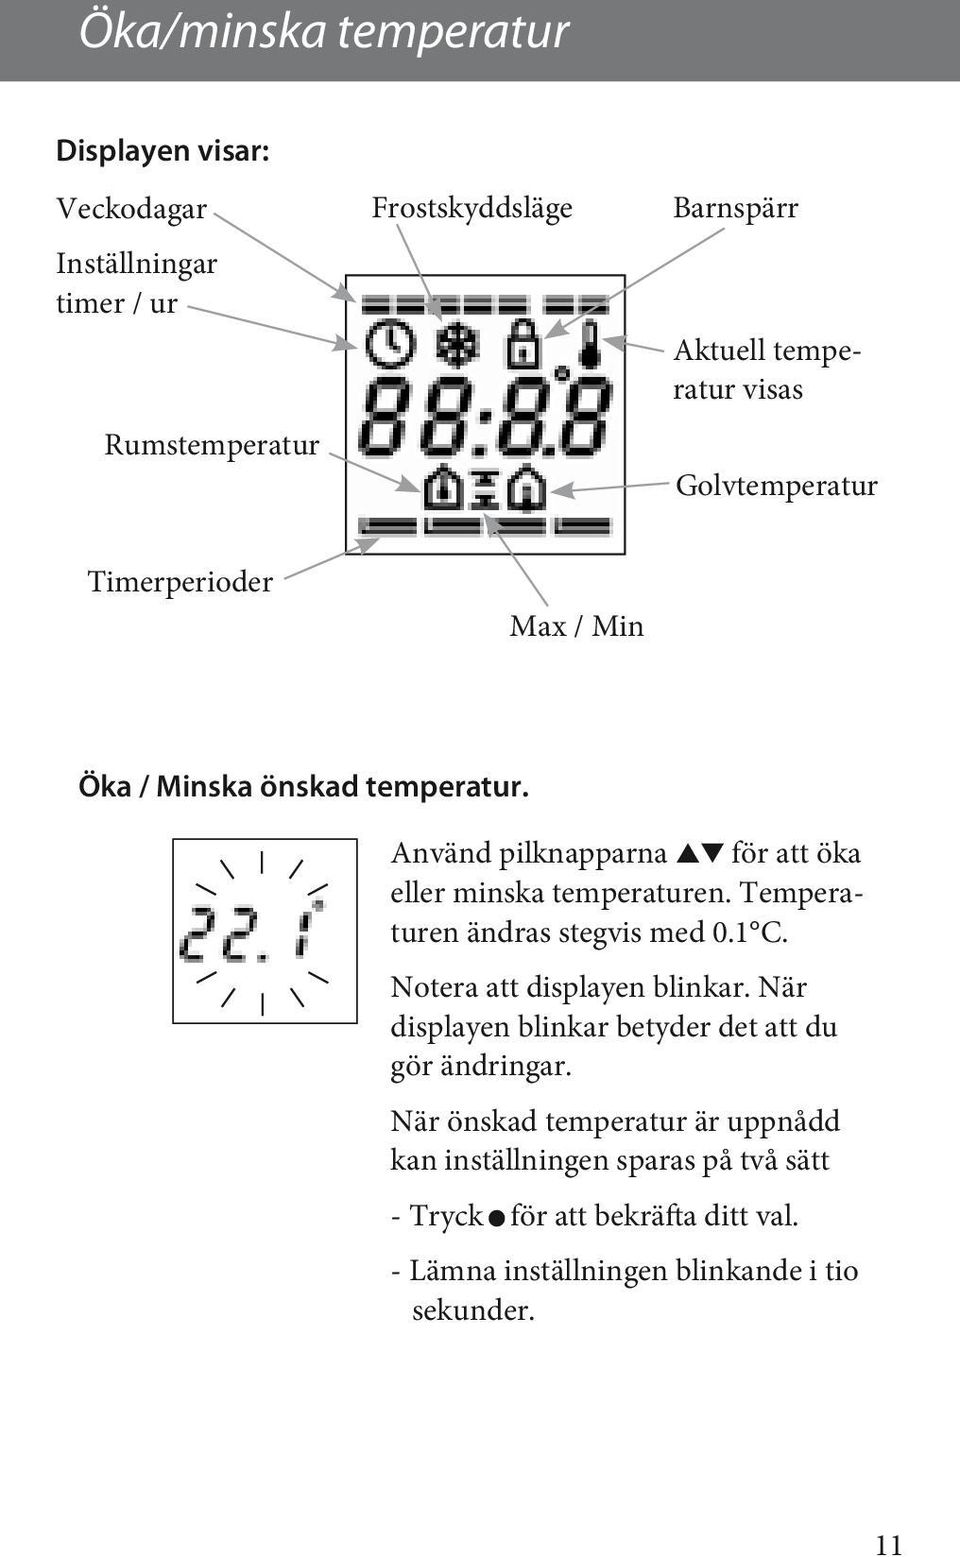 Temperaturen ändras stegvis med 0.1 C. Notera att displayen blinkar. När displayen blinkar betyder det att du gör ändringar.